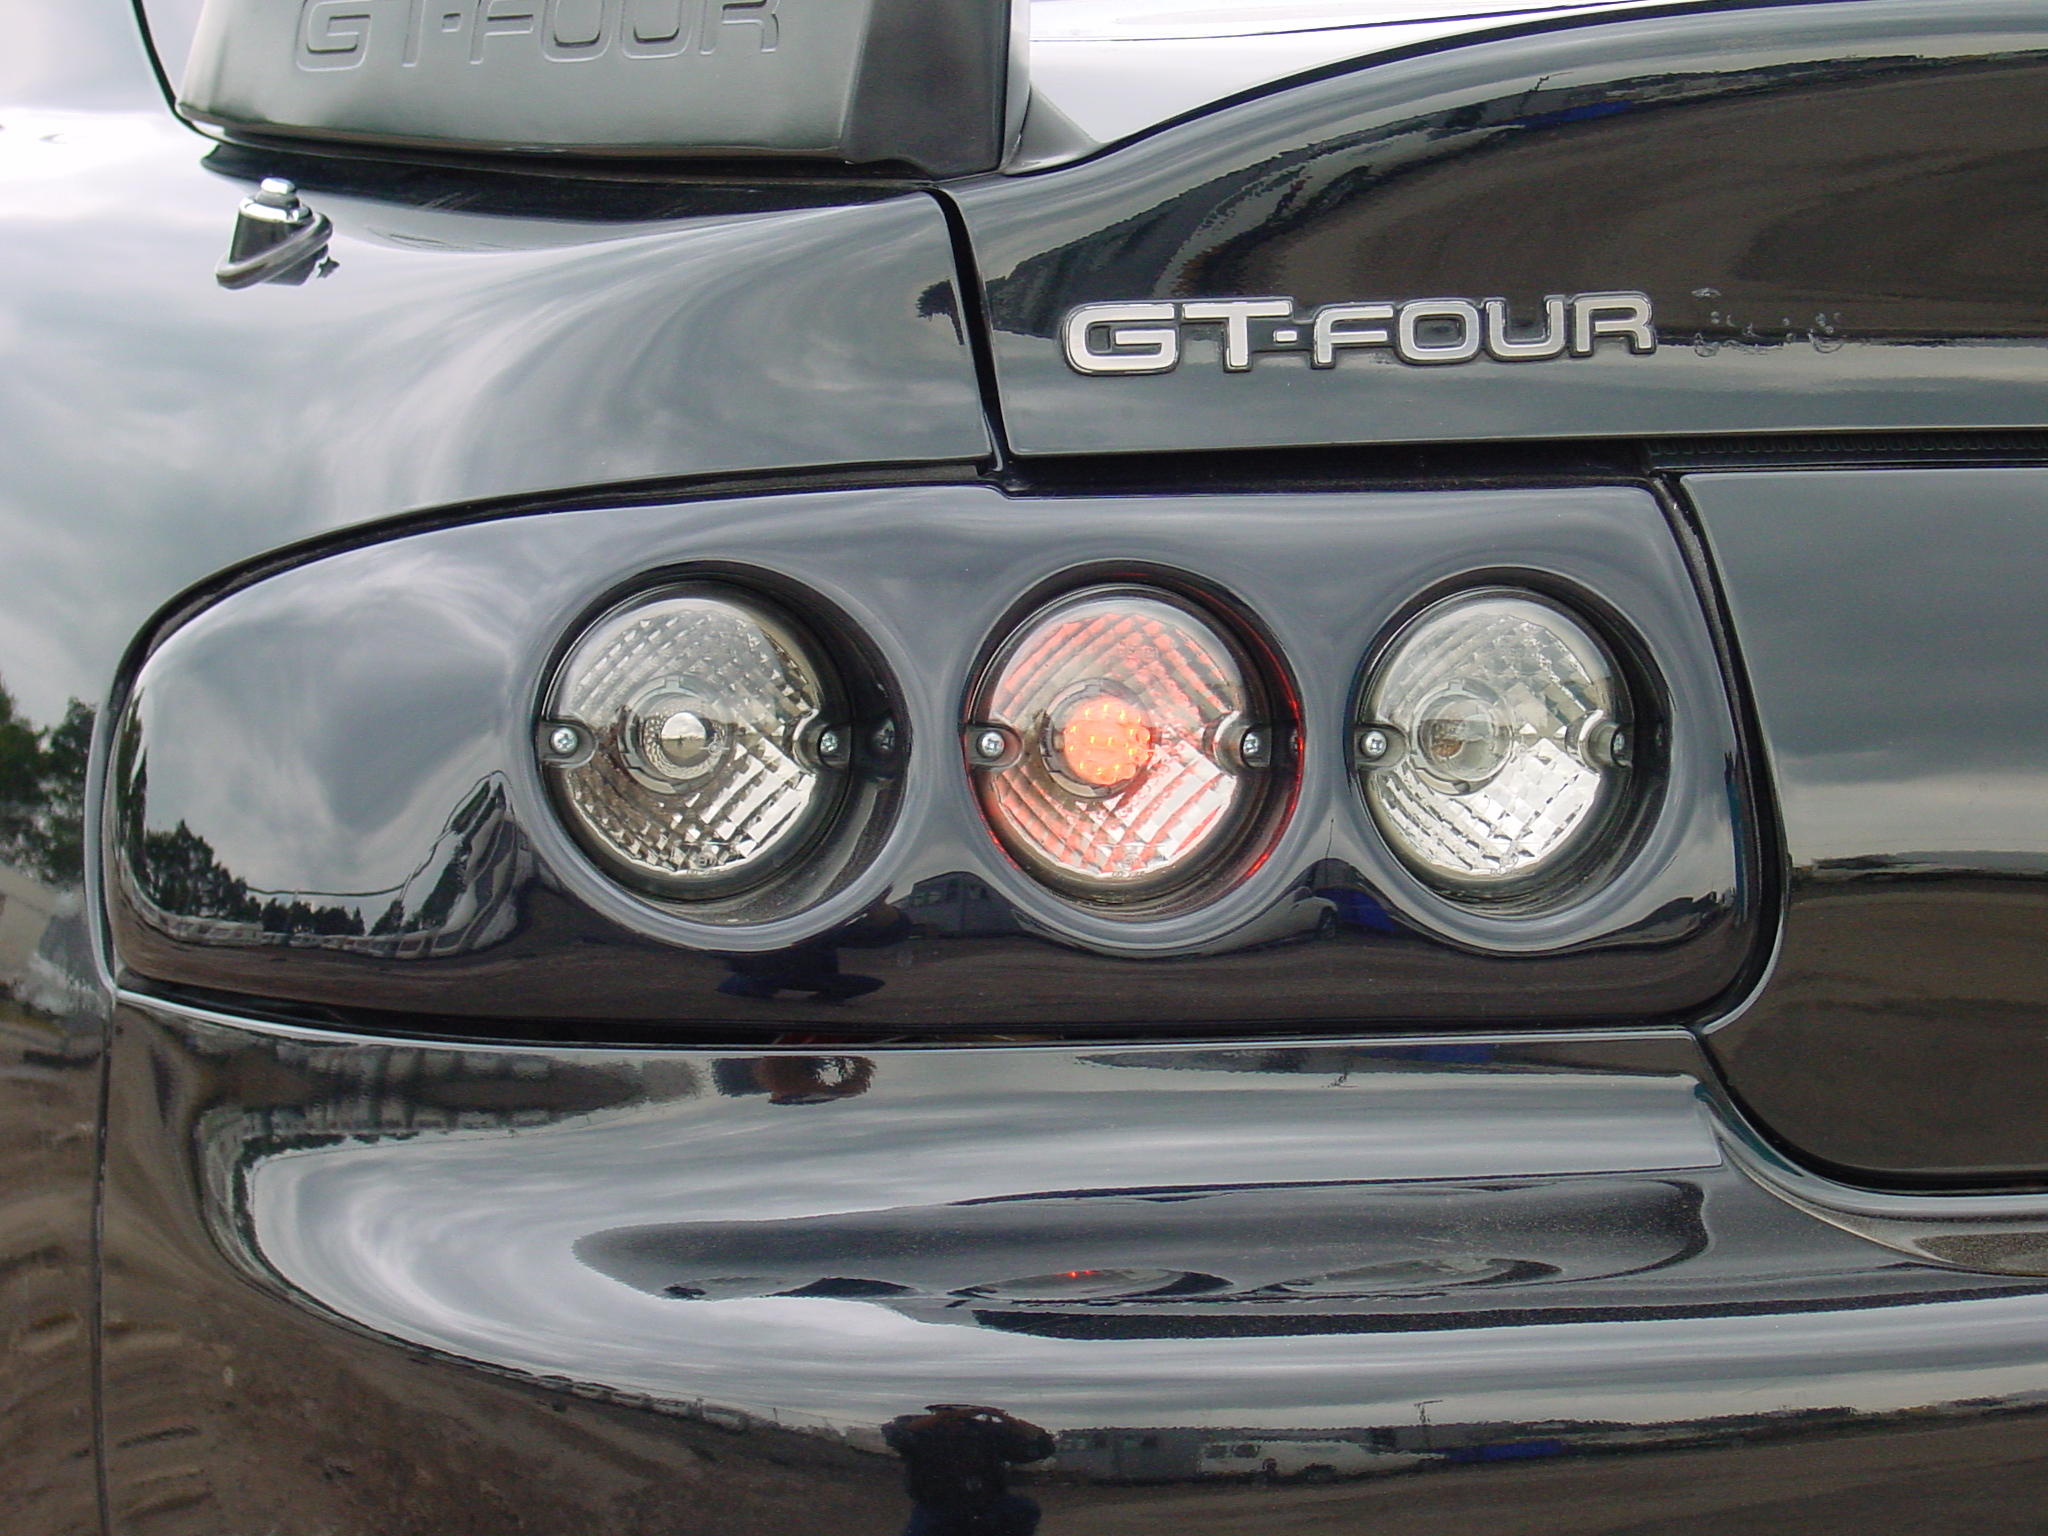 Toyota Celica afterburner rear lights